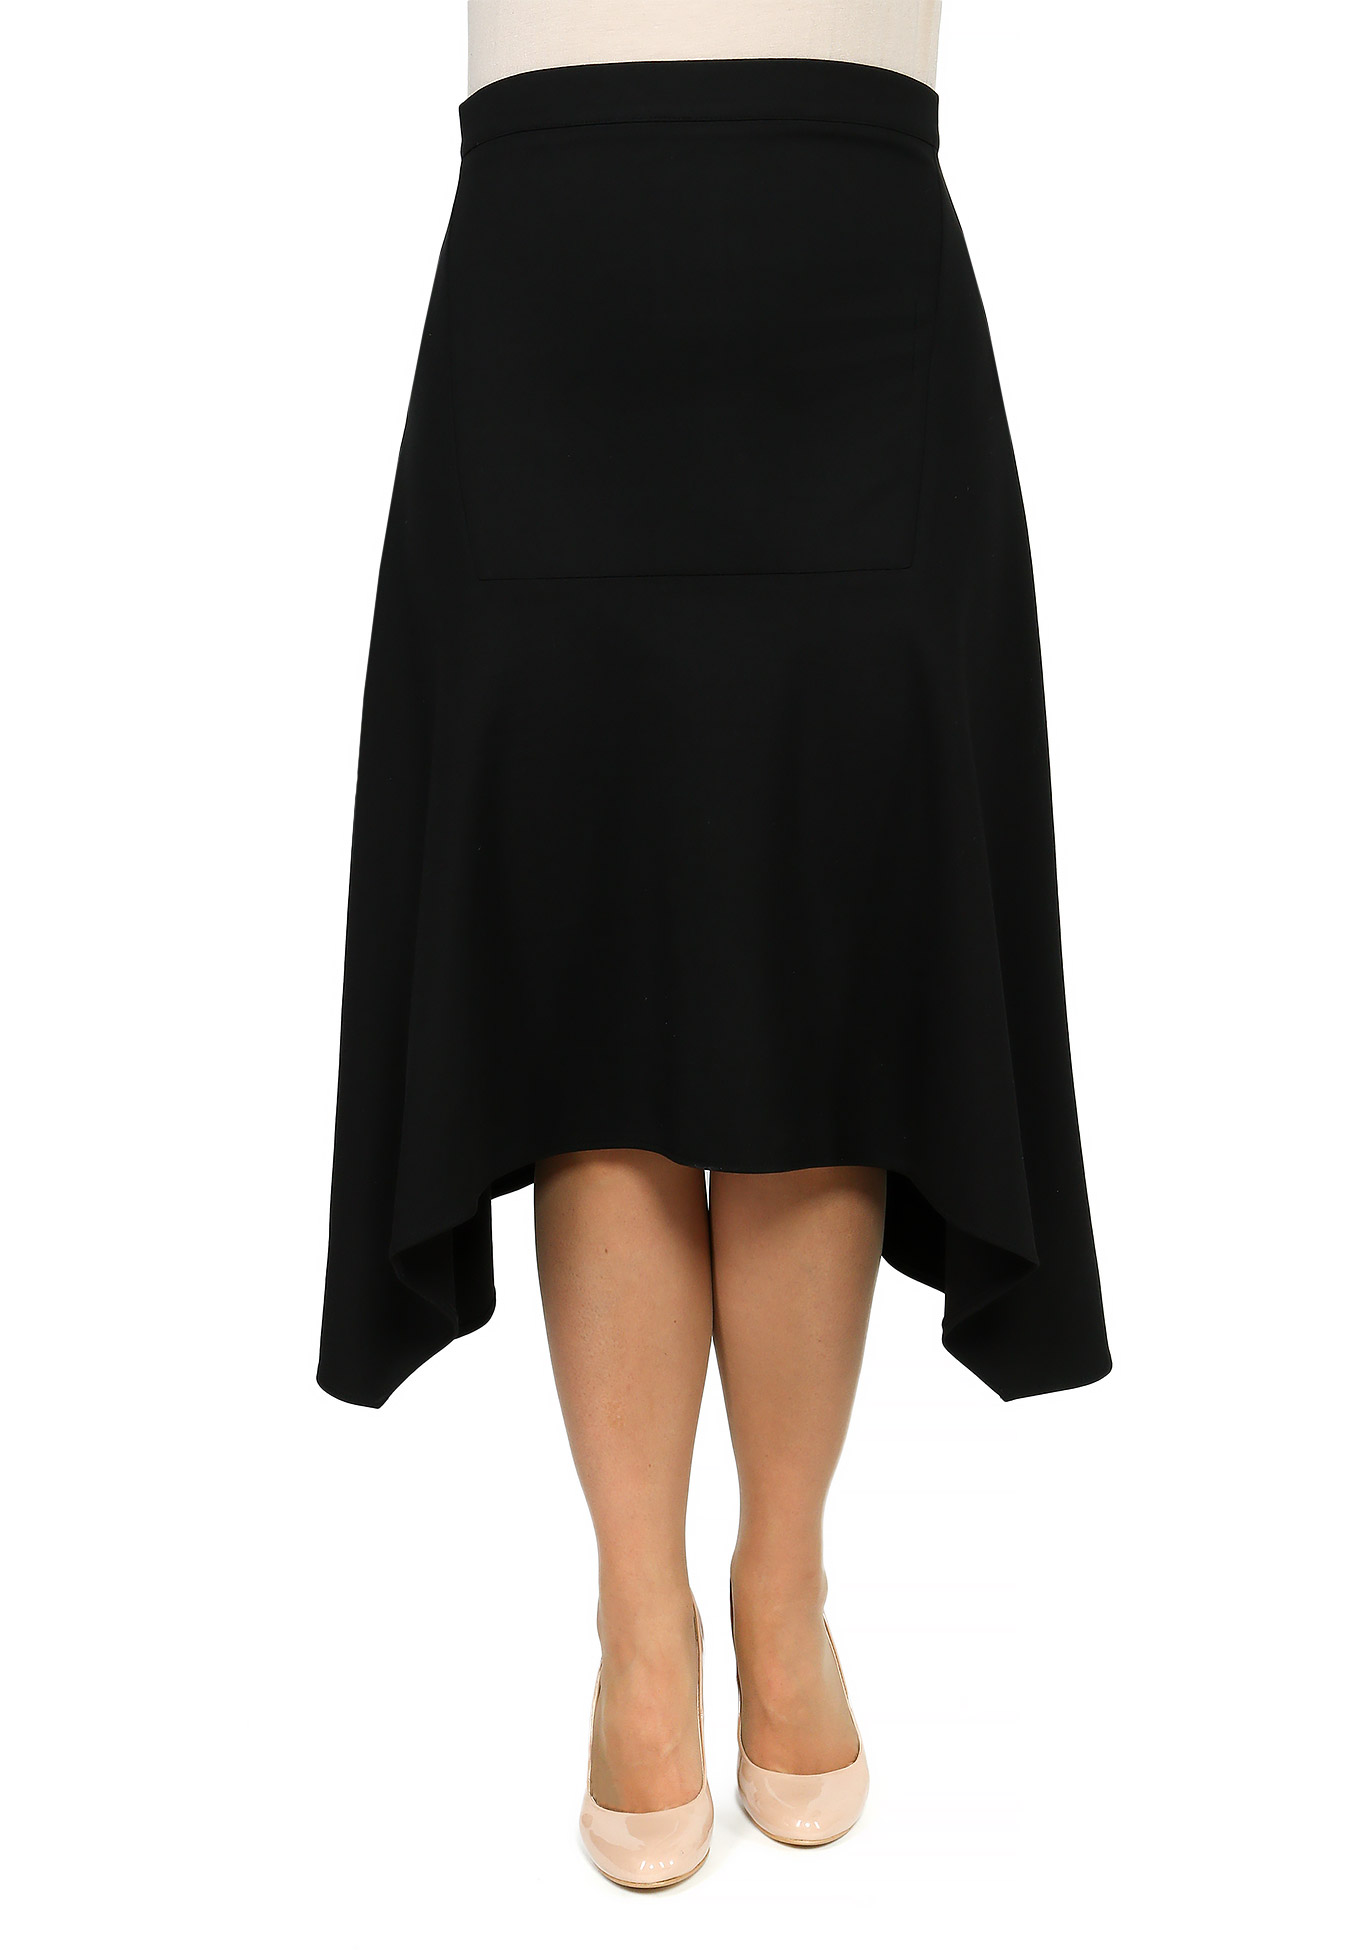 Юбка женская с асимметричным низом юбка шорты трикотажная